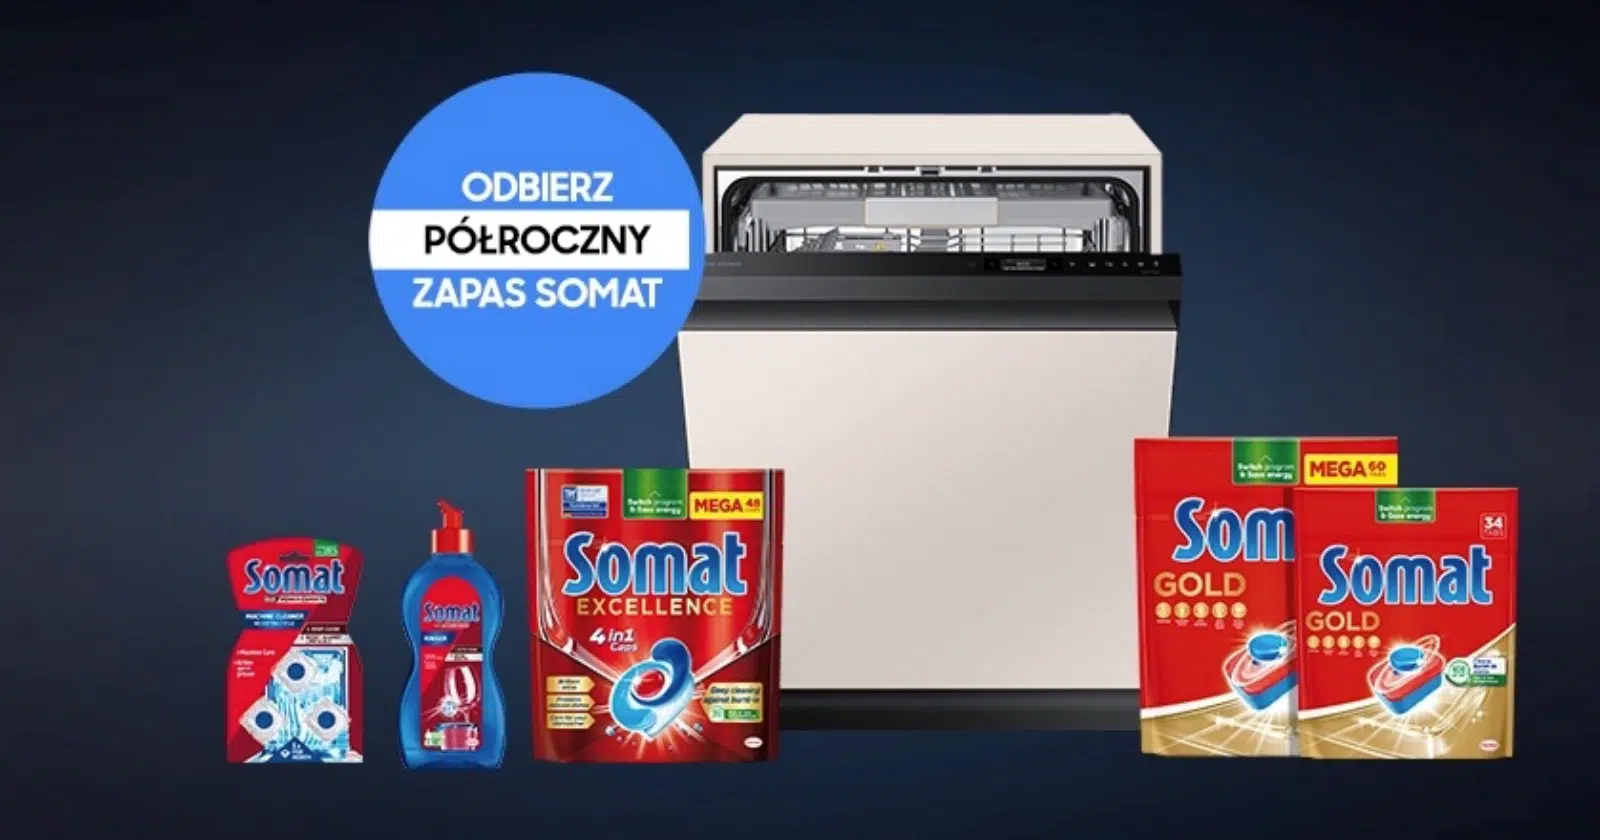 zmywarka Samsung i zestaw produktów Somat biorących udział w promocji